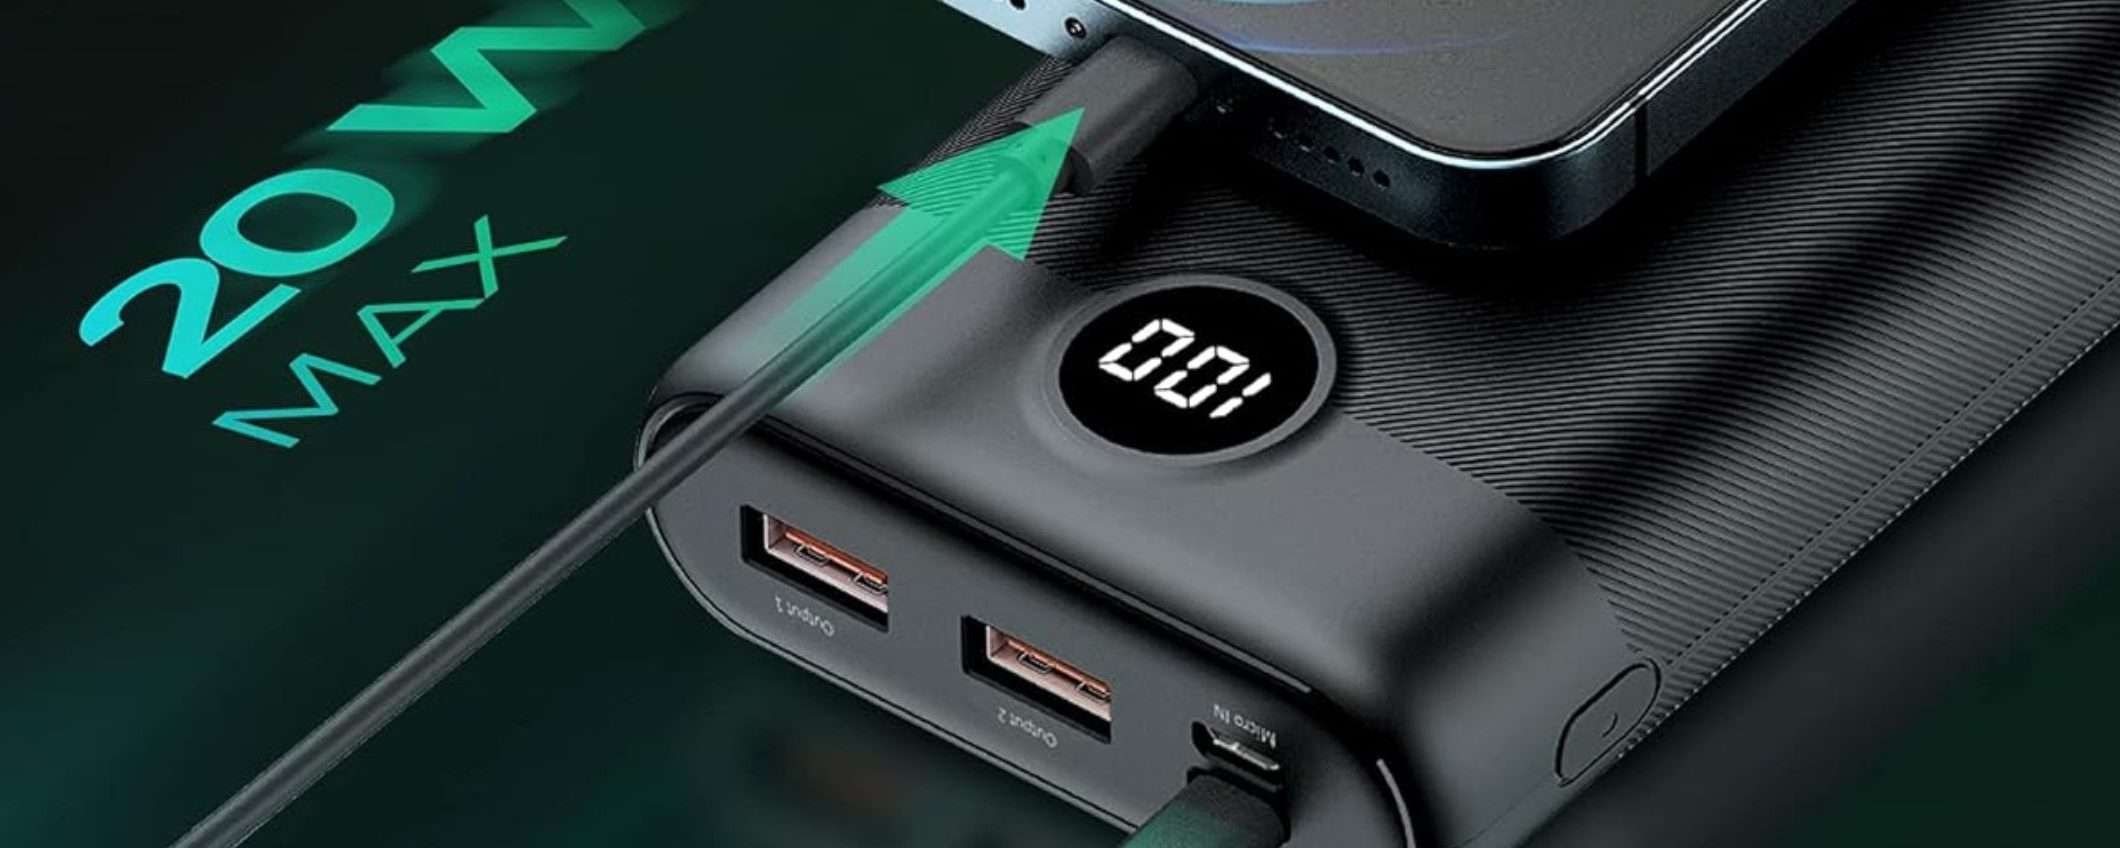 Power Bank 30000mAh USB-C: potentissimo e in DOPPIO SCONTO